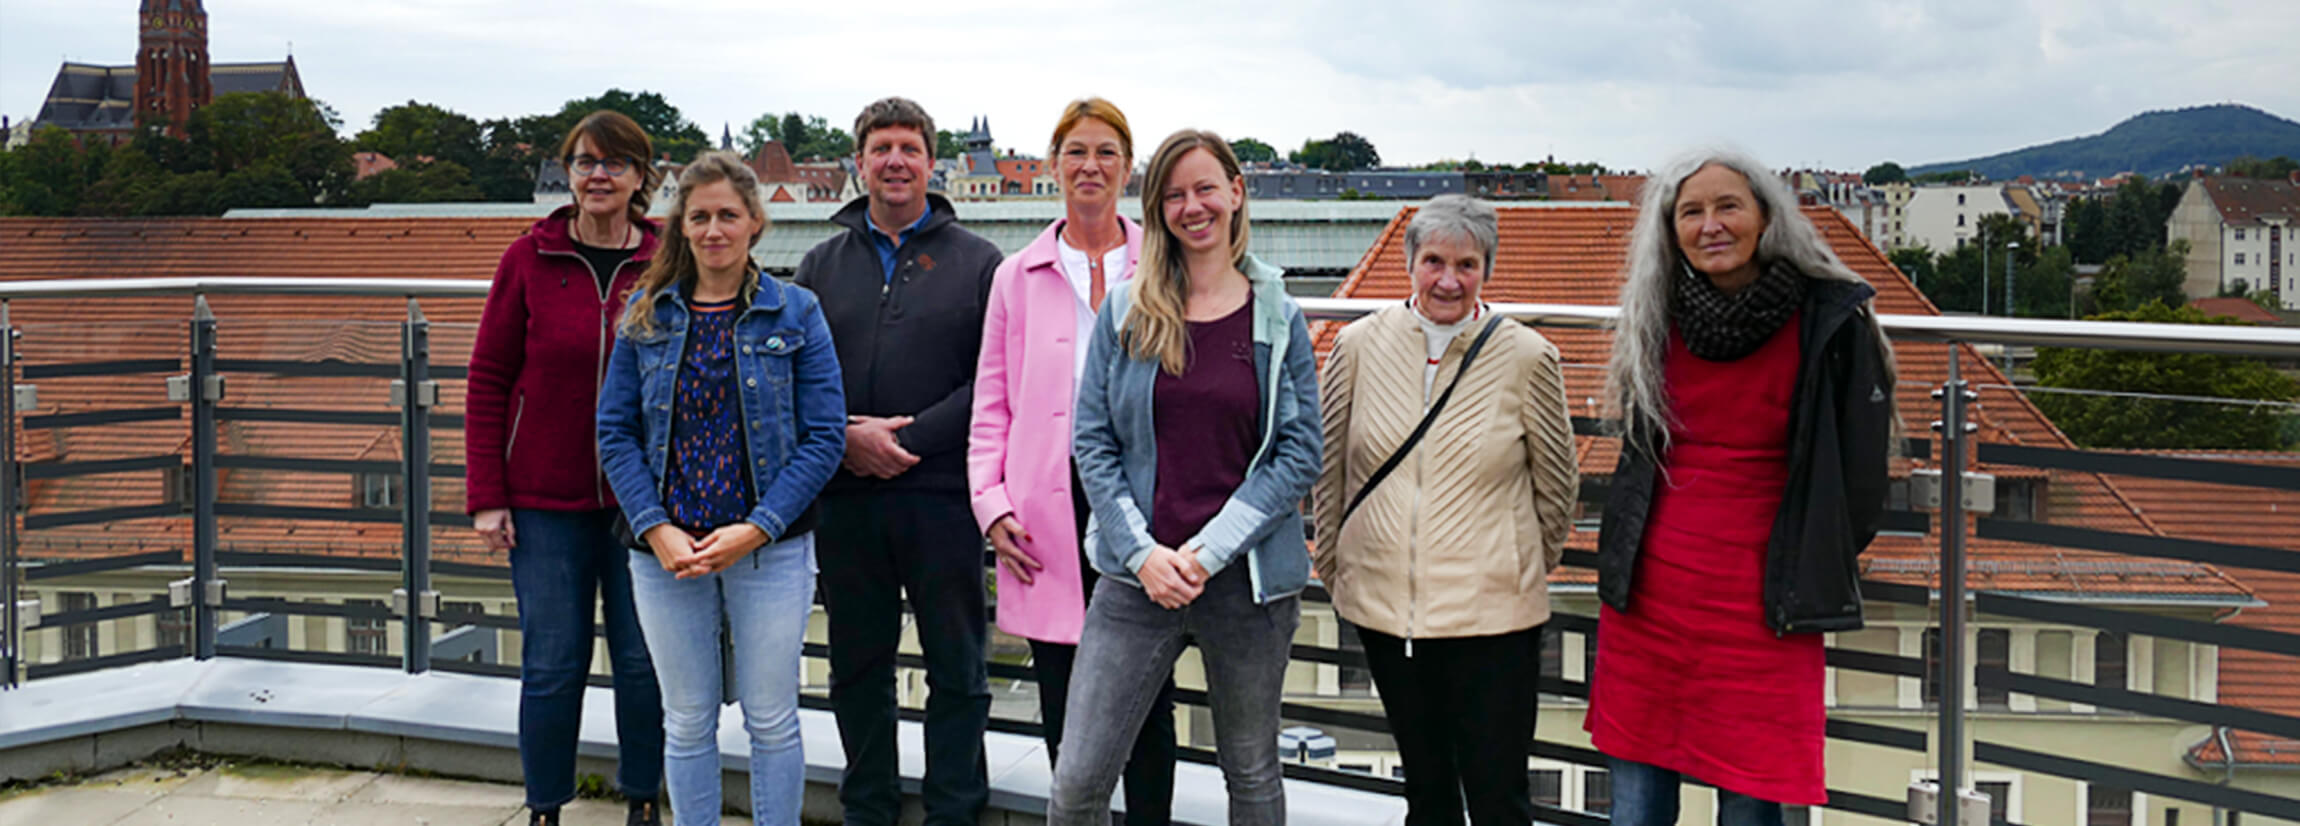 Gruppenbild von sieben Mitgliedern des Begleitausschusses auf der Dachterrasse des Landratsamtes in Görlitz. Mit dem Link öffnet sich eine größere Ansicht.